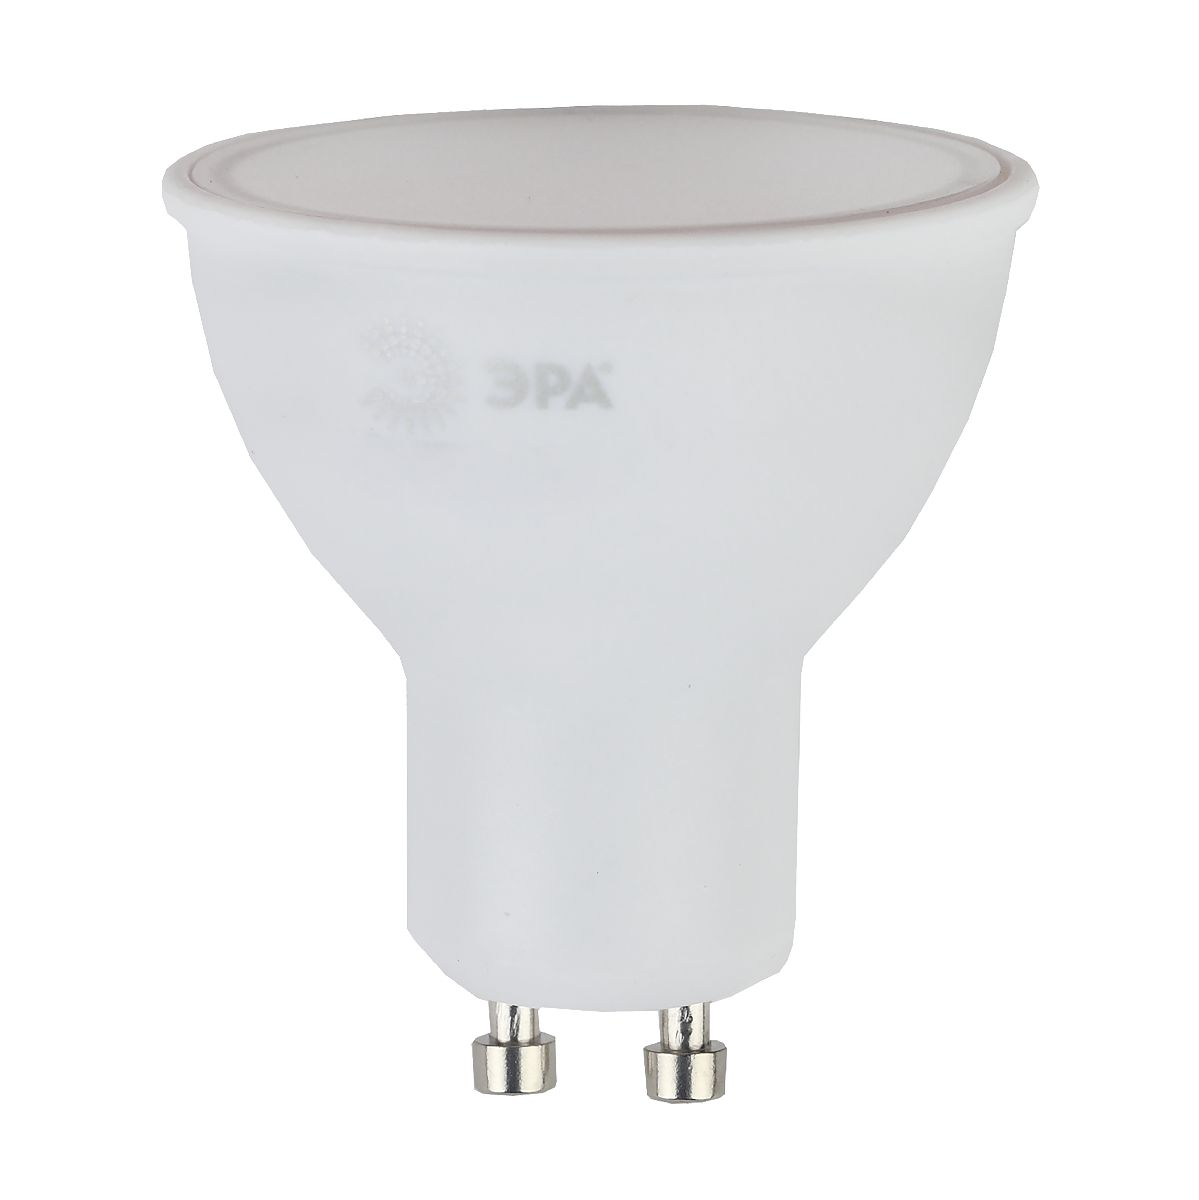 Лампа светодиодная Эра GU10 7W 2700K LED MR16-7W-827-GU10 R Б0050198